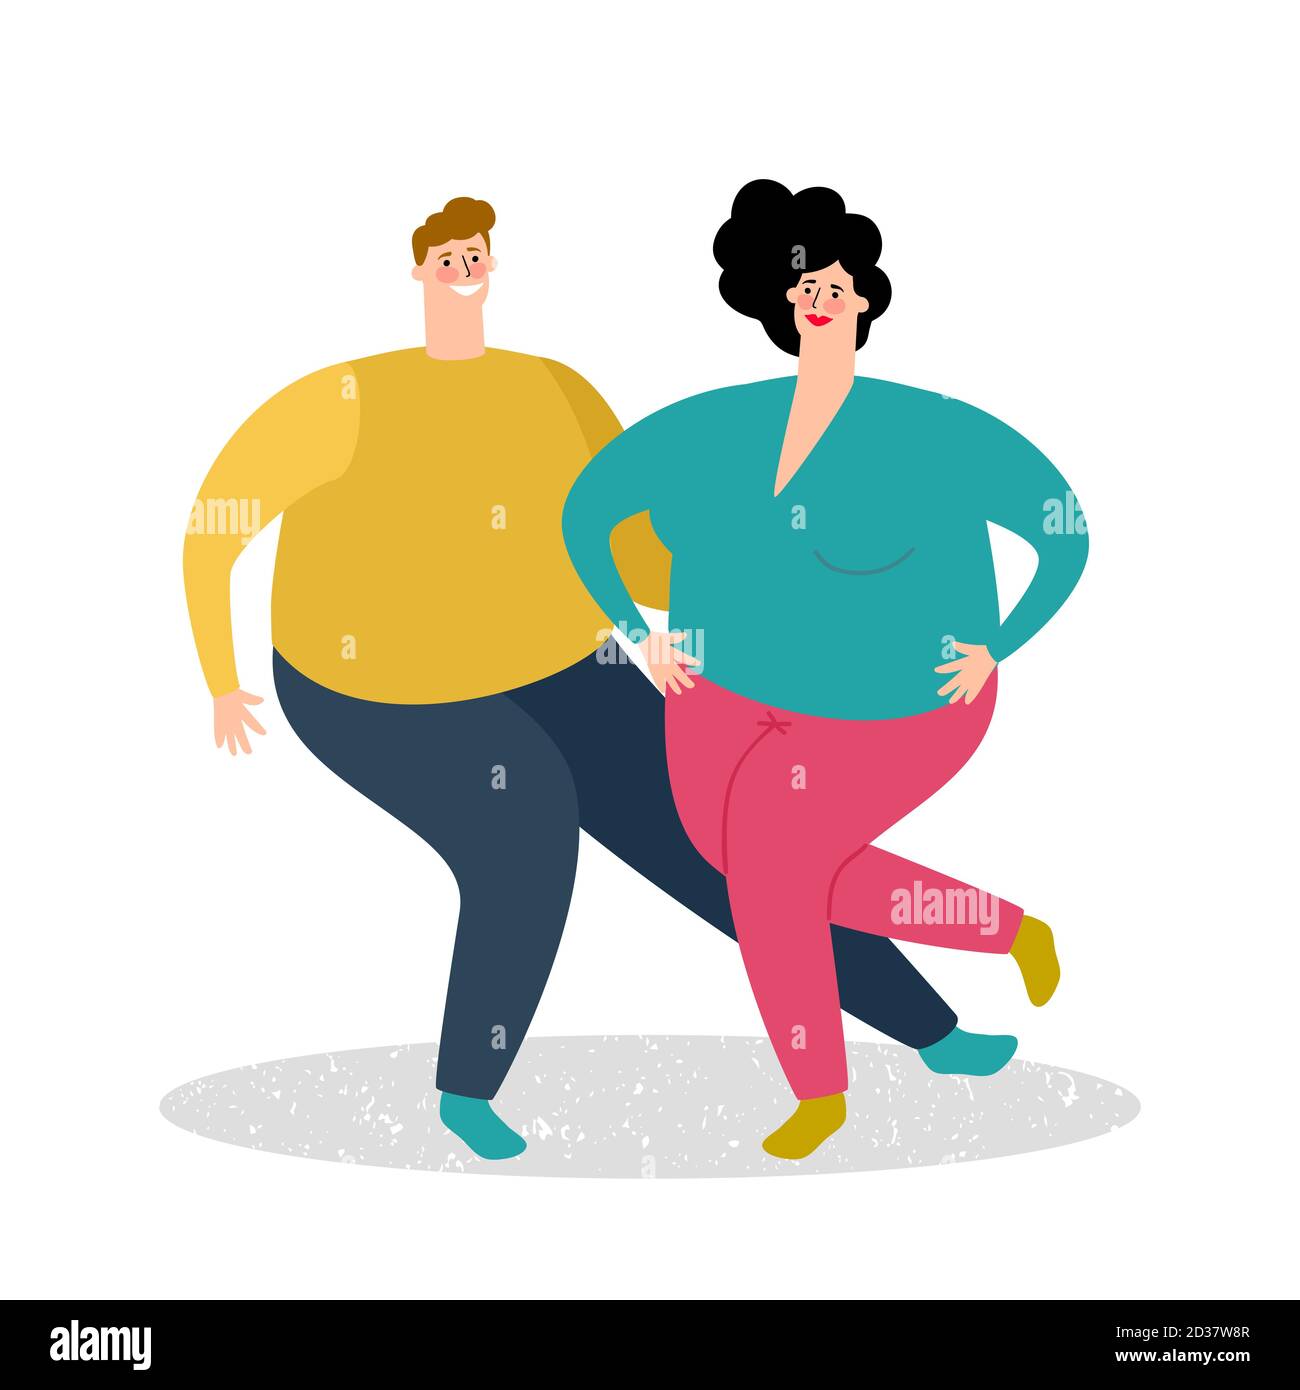 Plump tanzende paar Vektor-Illustration. Fetter Mann und fette Frau tanzen Stock Vektor